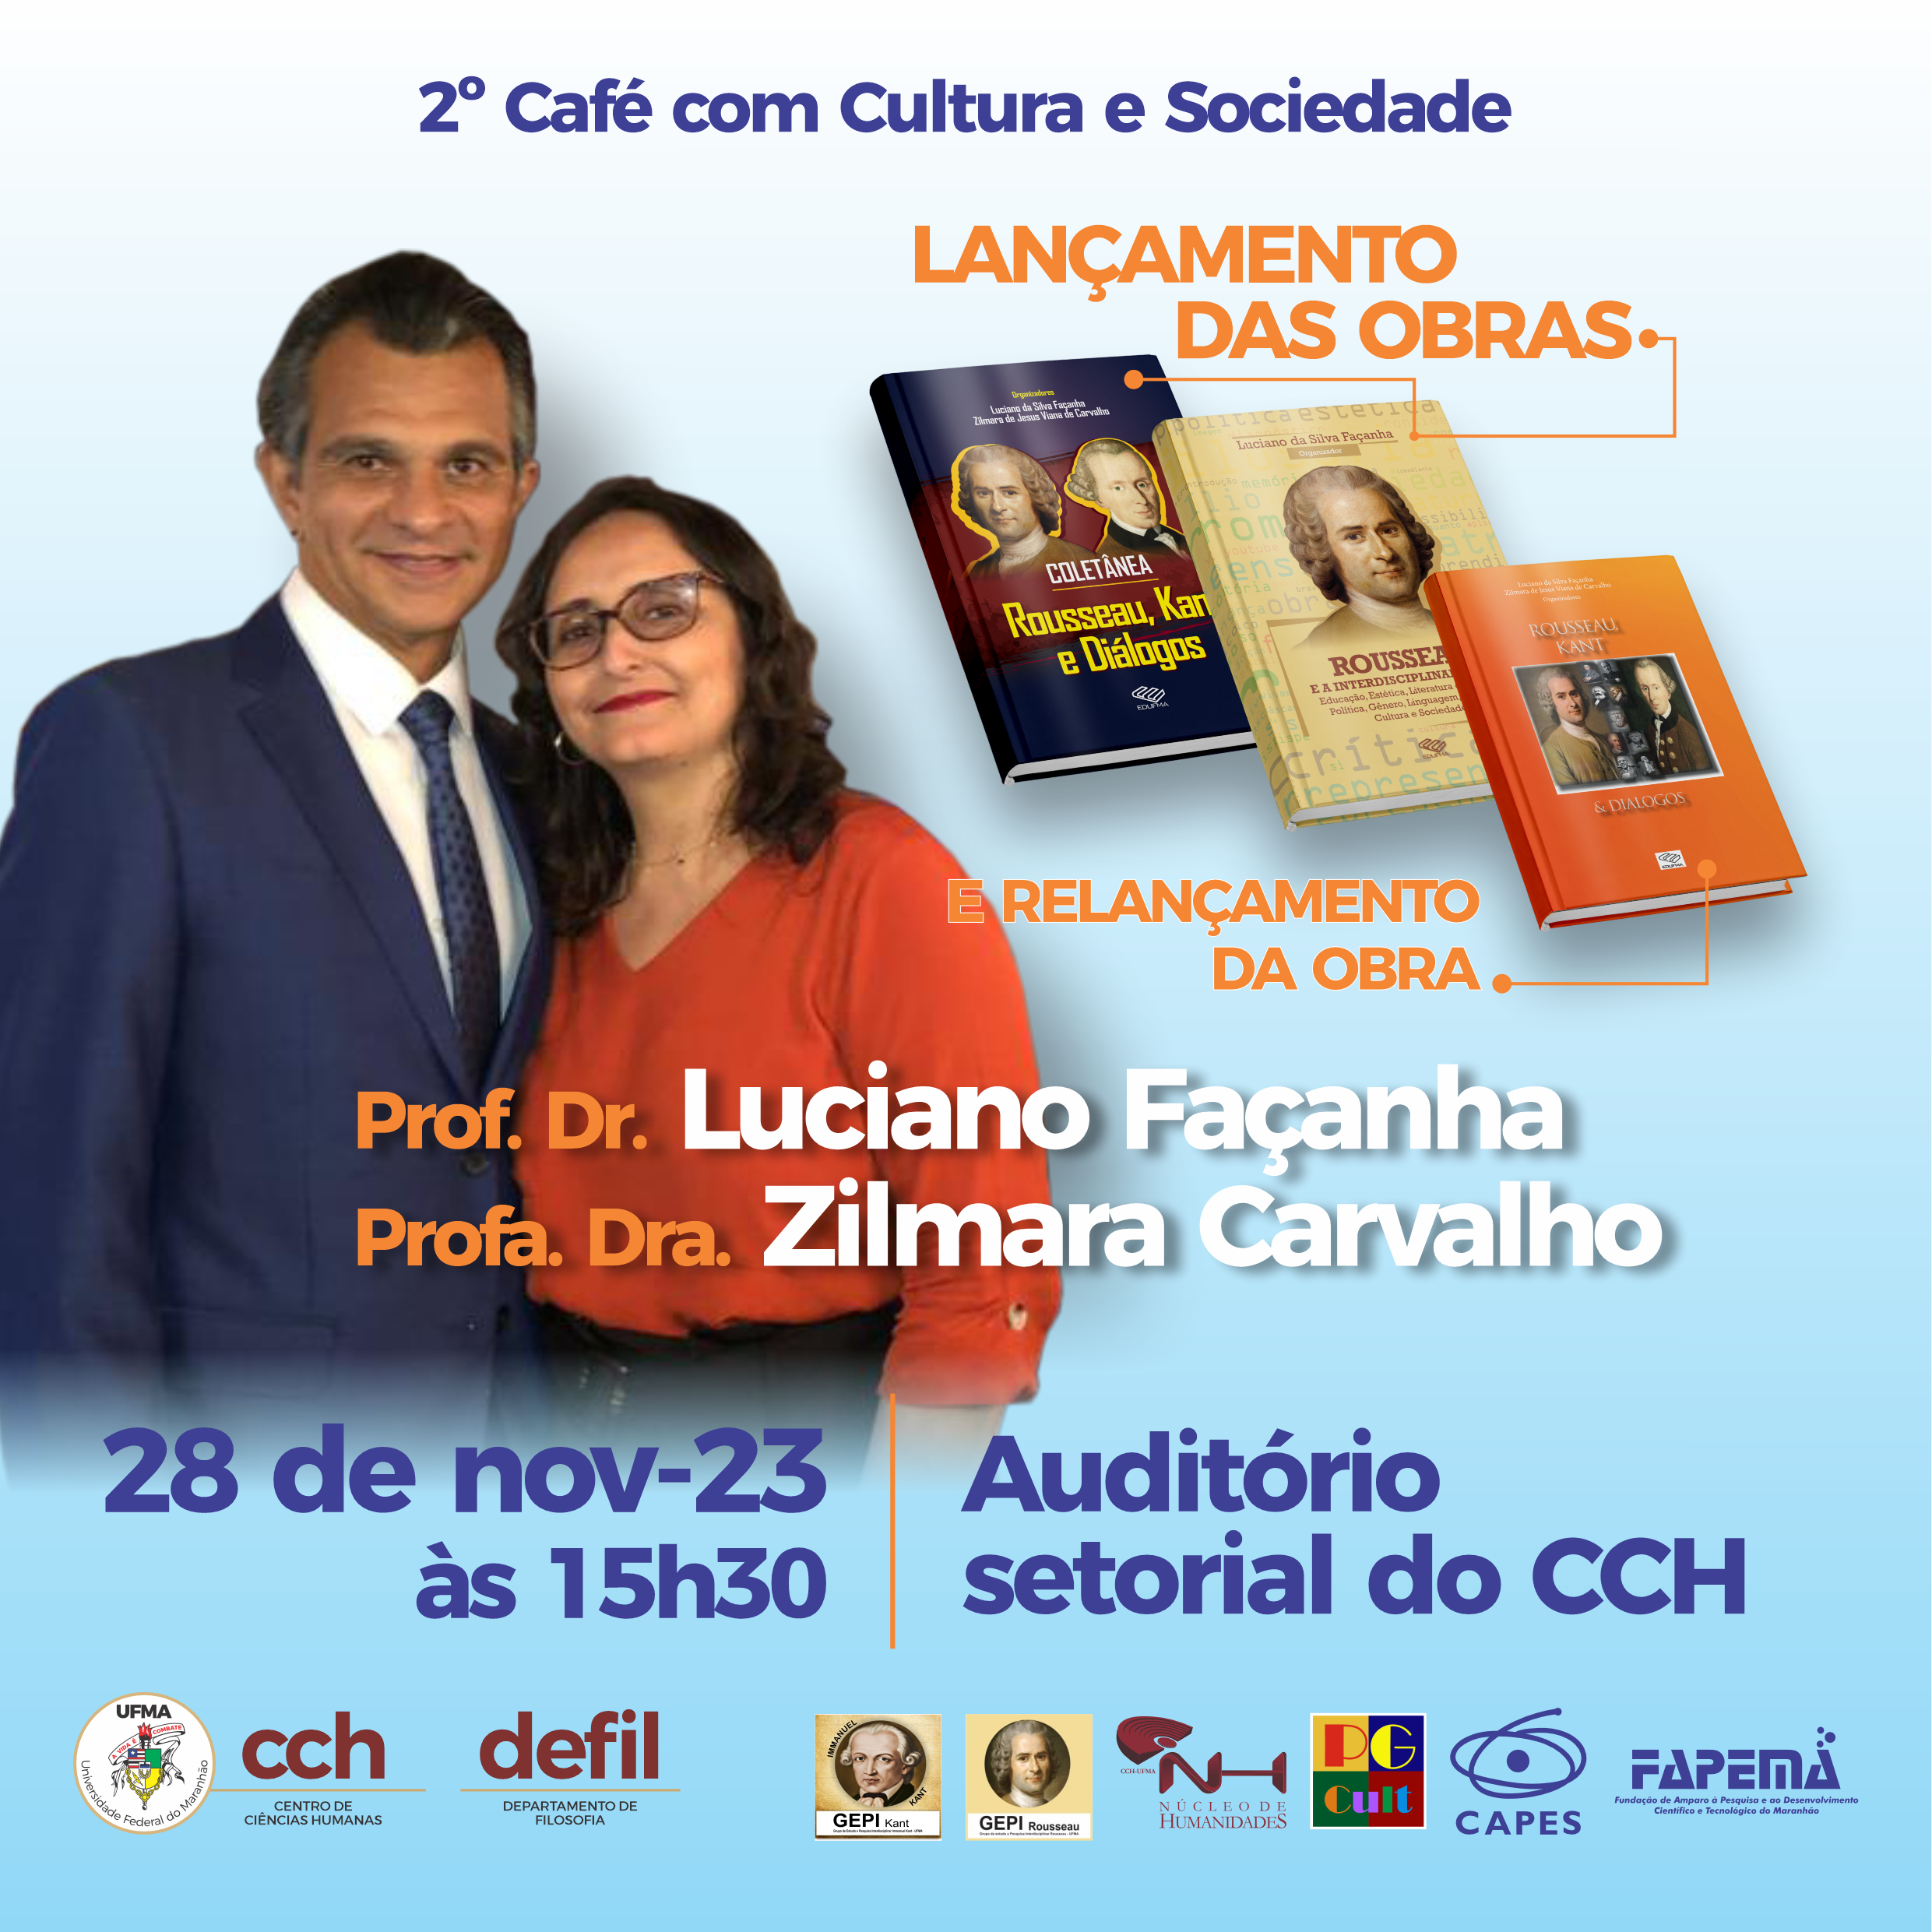 Docentes da UFMA Câmpus São Luís promovem lançamento de livros no Auditório Setorial do CCH, na terça-feira, 28 de novembro